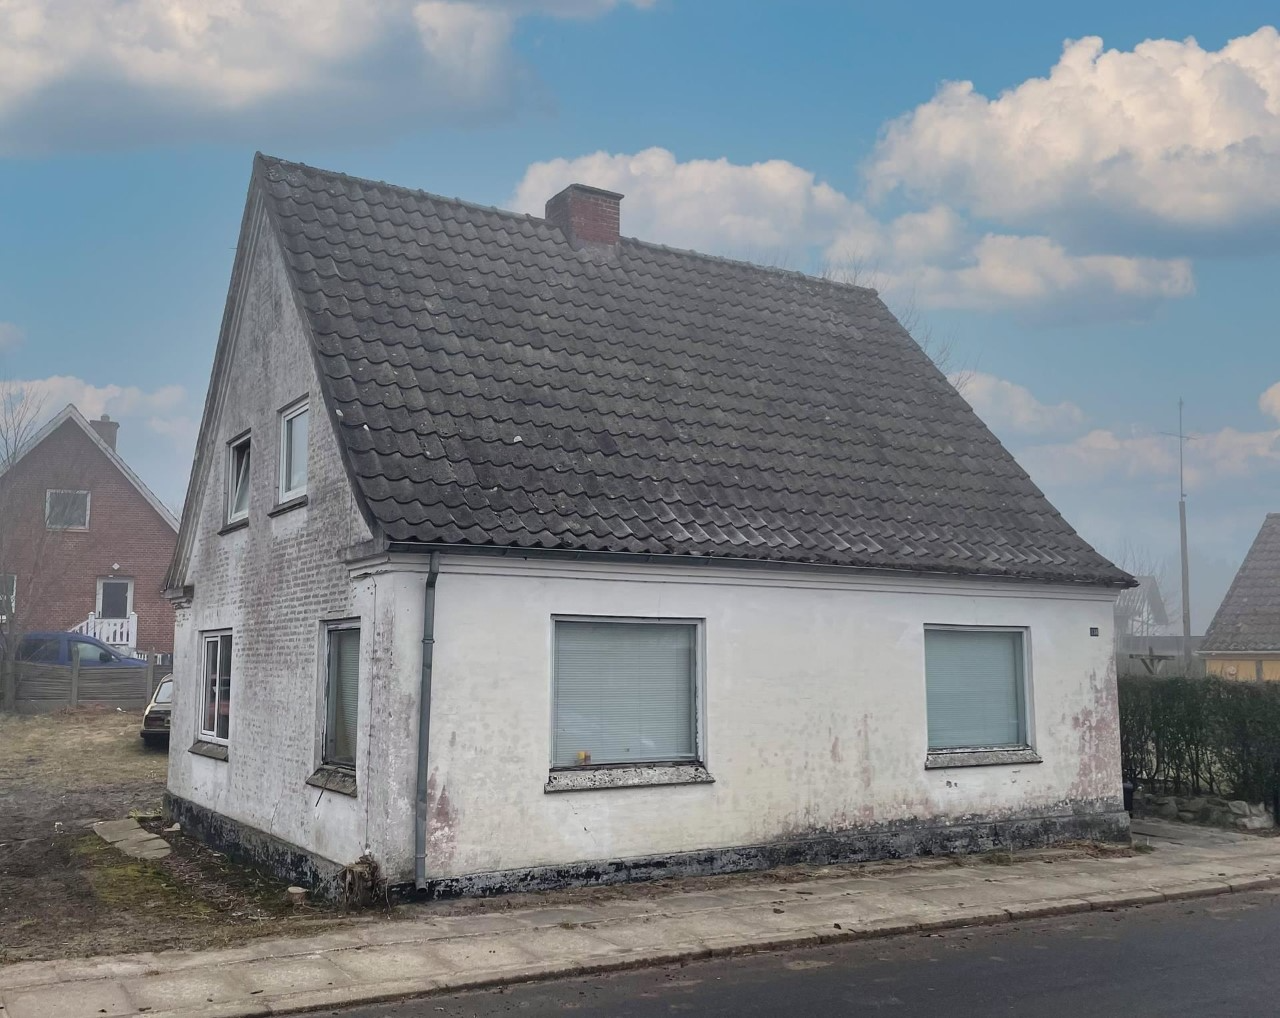 Danmarks billigste hus ligger i Nordjylland - så billigt kan du få fingre i 71 kvadratmeter